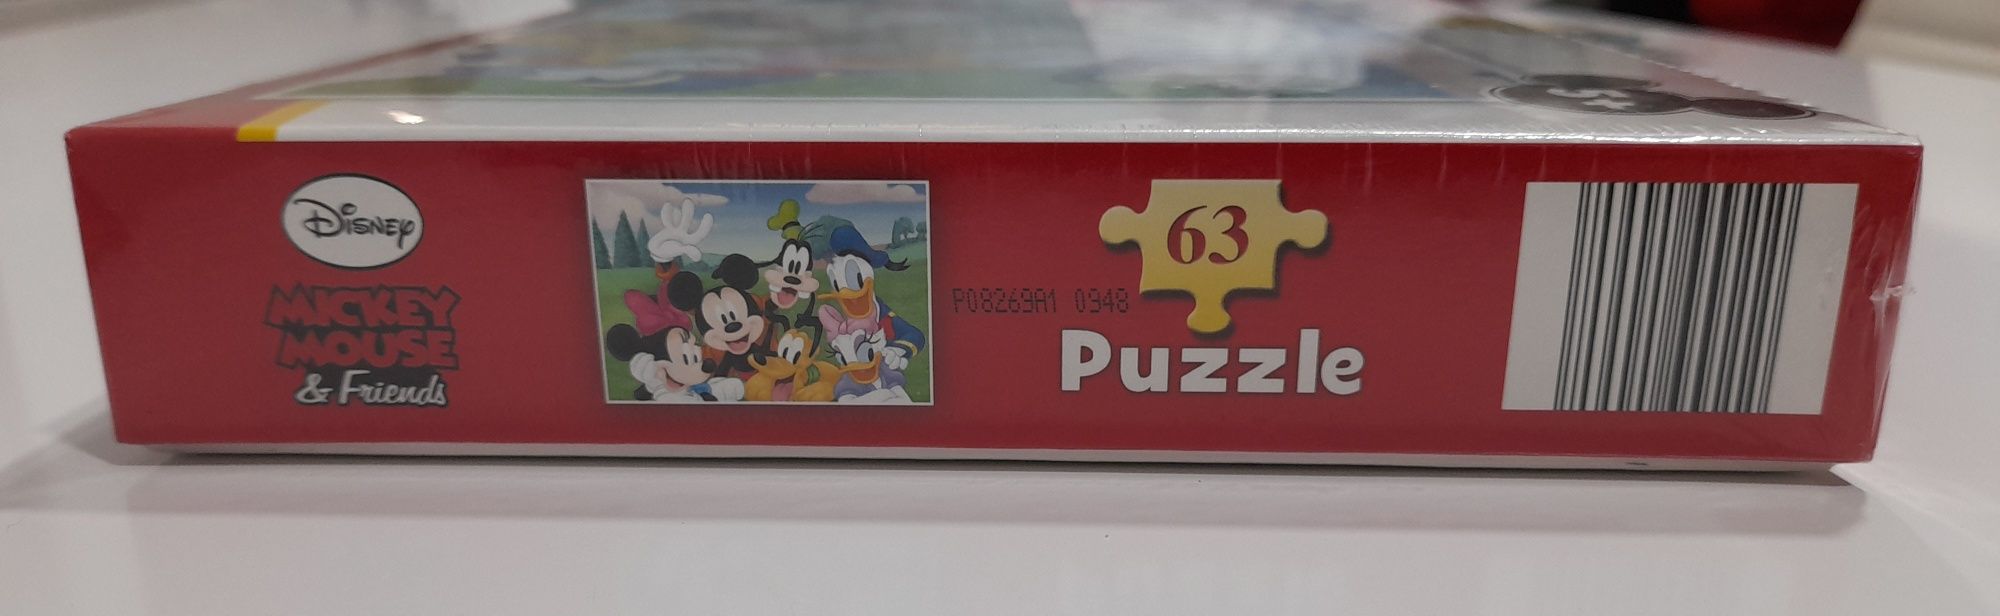 Puzzle do Mickey Mouse com 63 peças NOVO